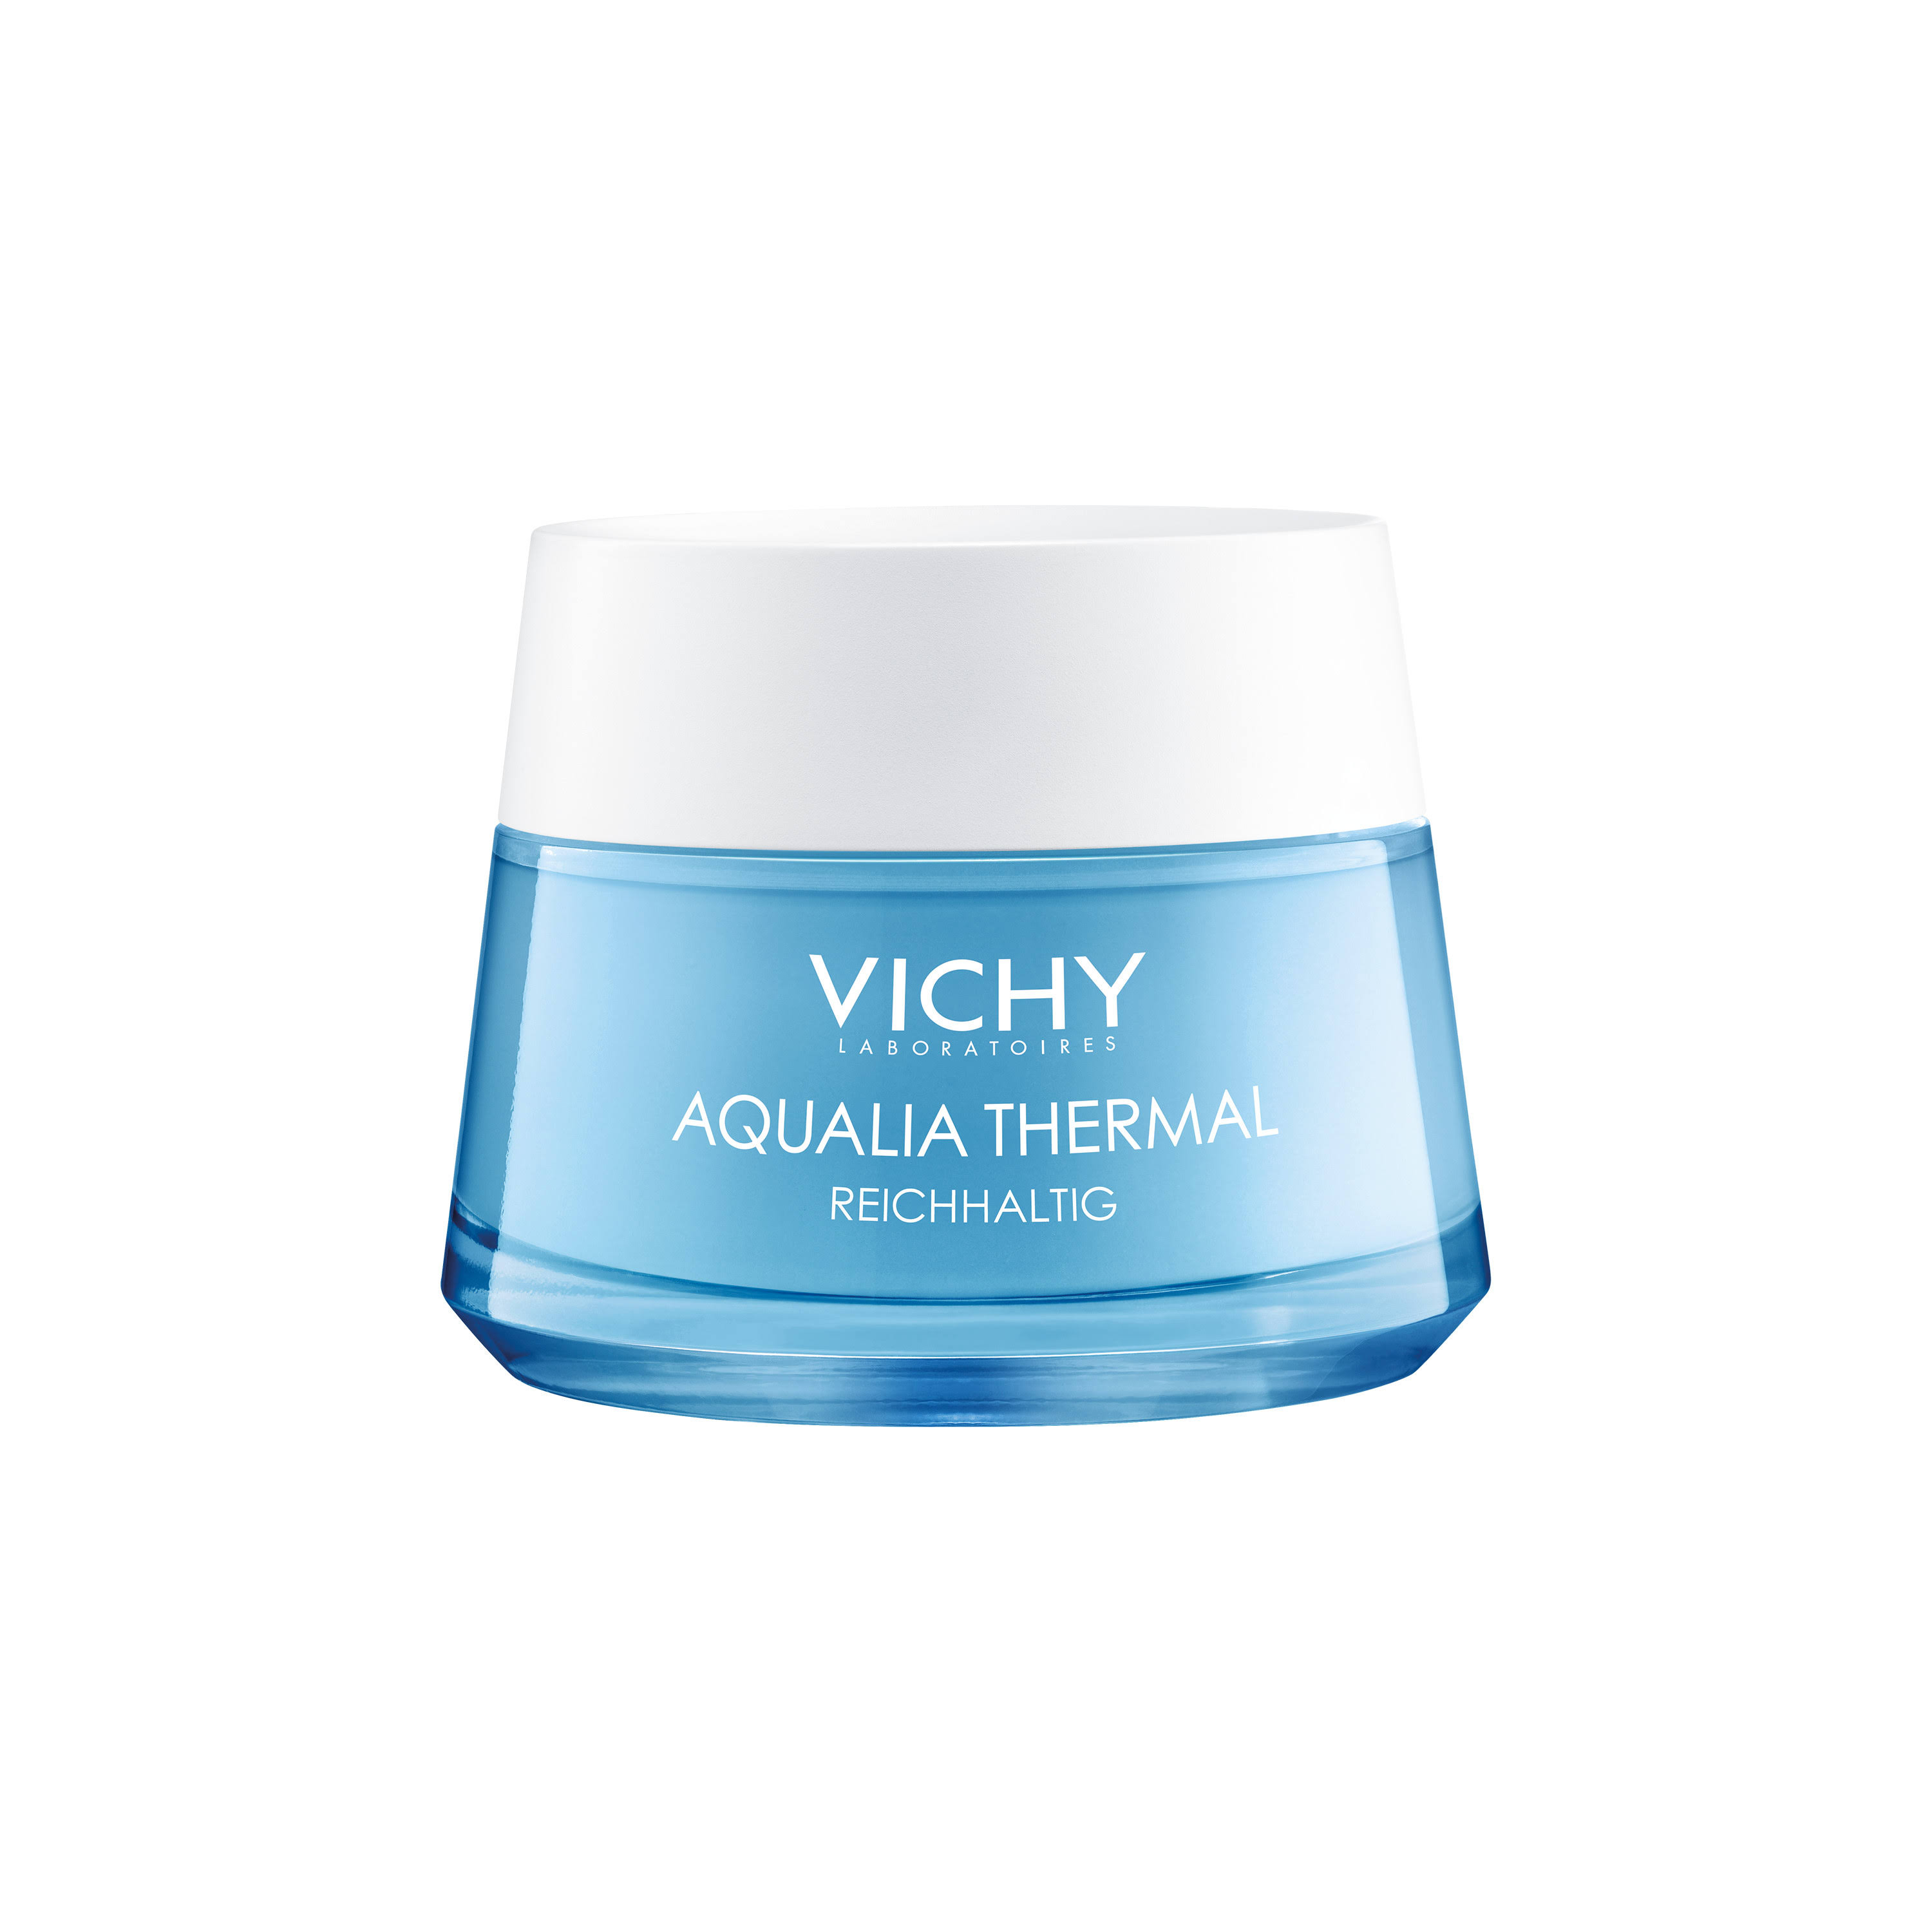 Vichy Rehydrating Cream, Rich, Aqualia Thermal - 50 ml